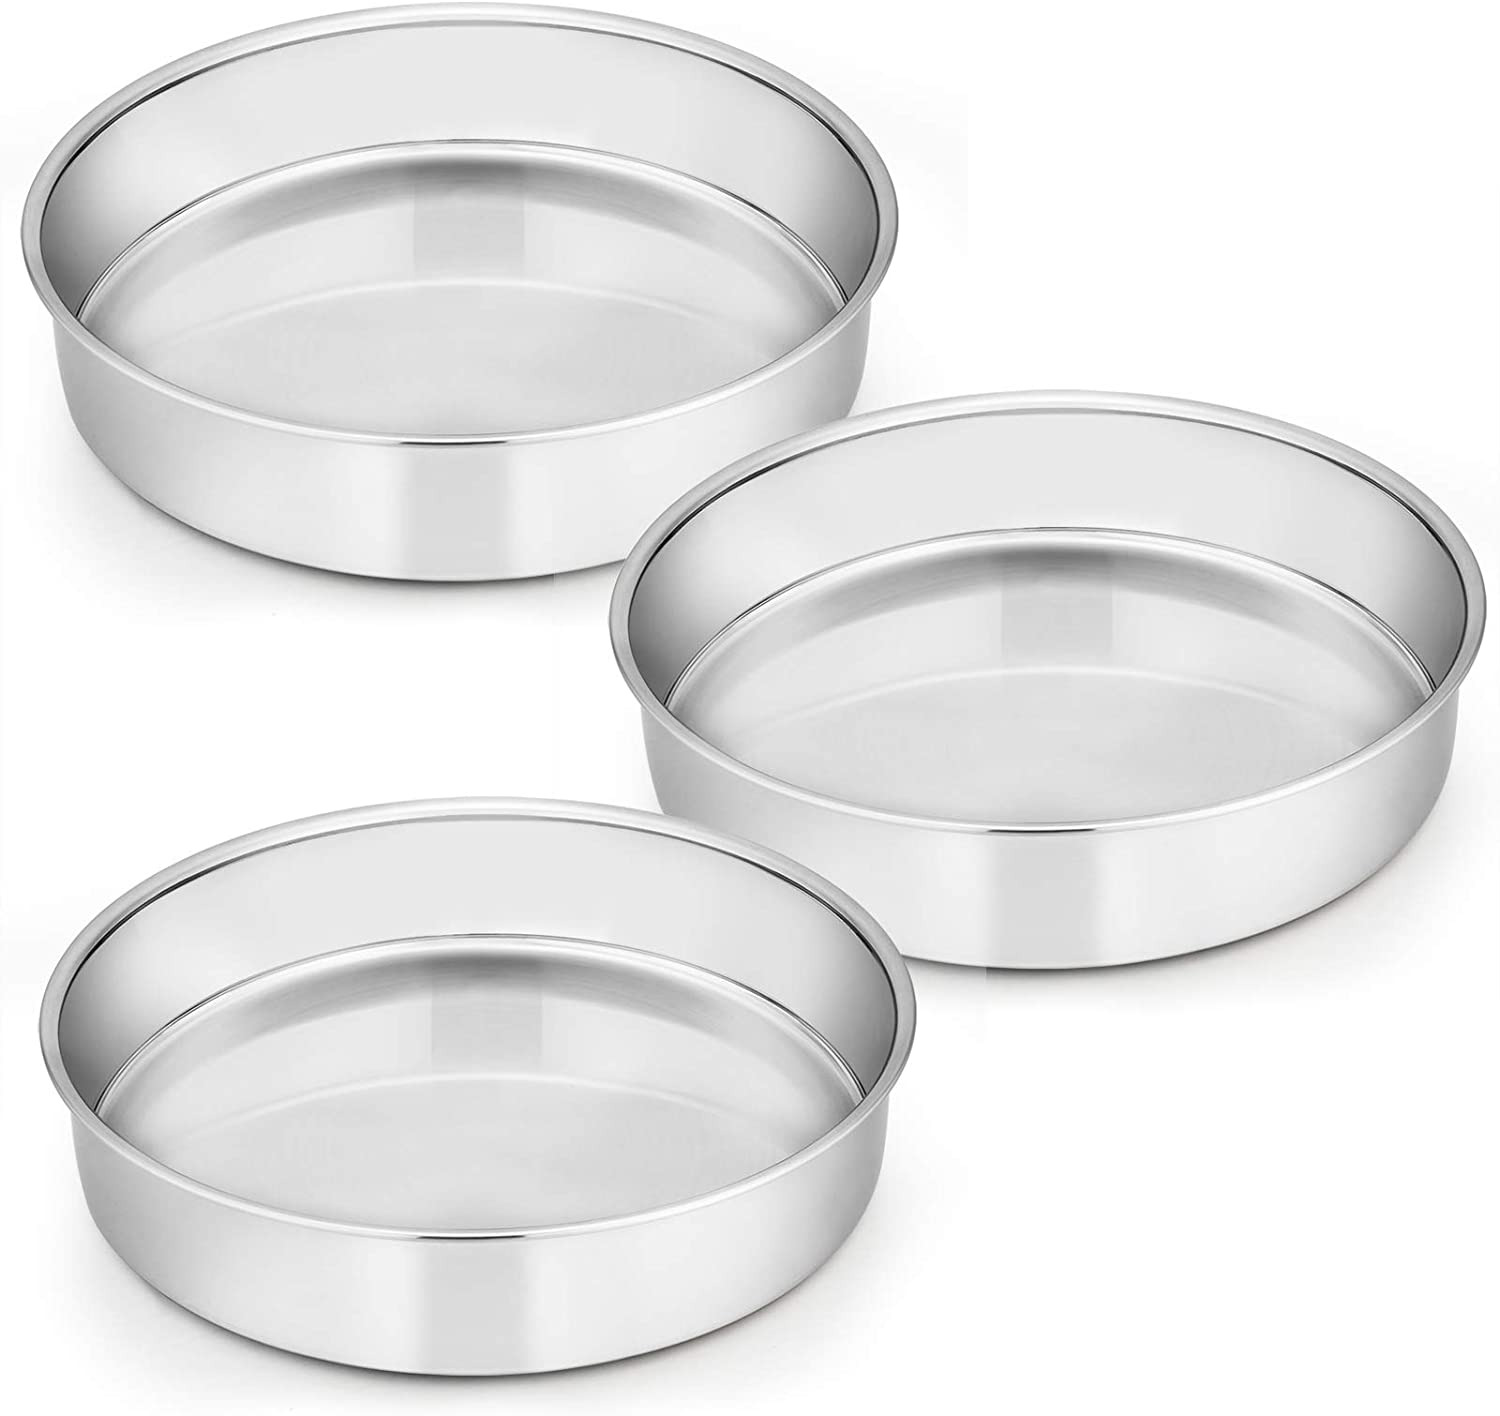 E-far 9½ Inch Cake Pan Set of 3, Stainless Steel Round Cake Baking Pans